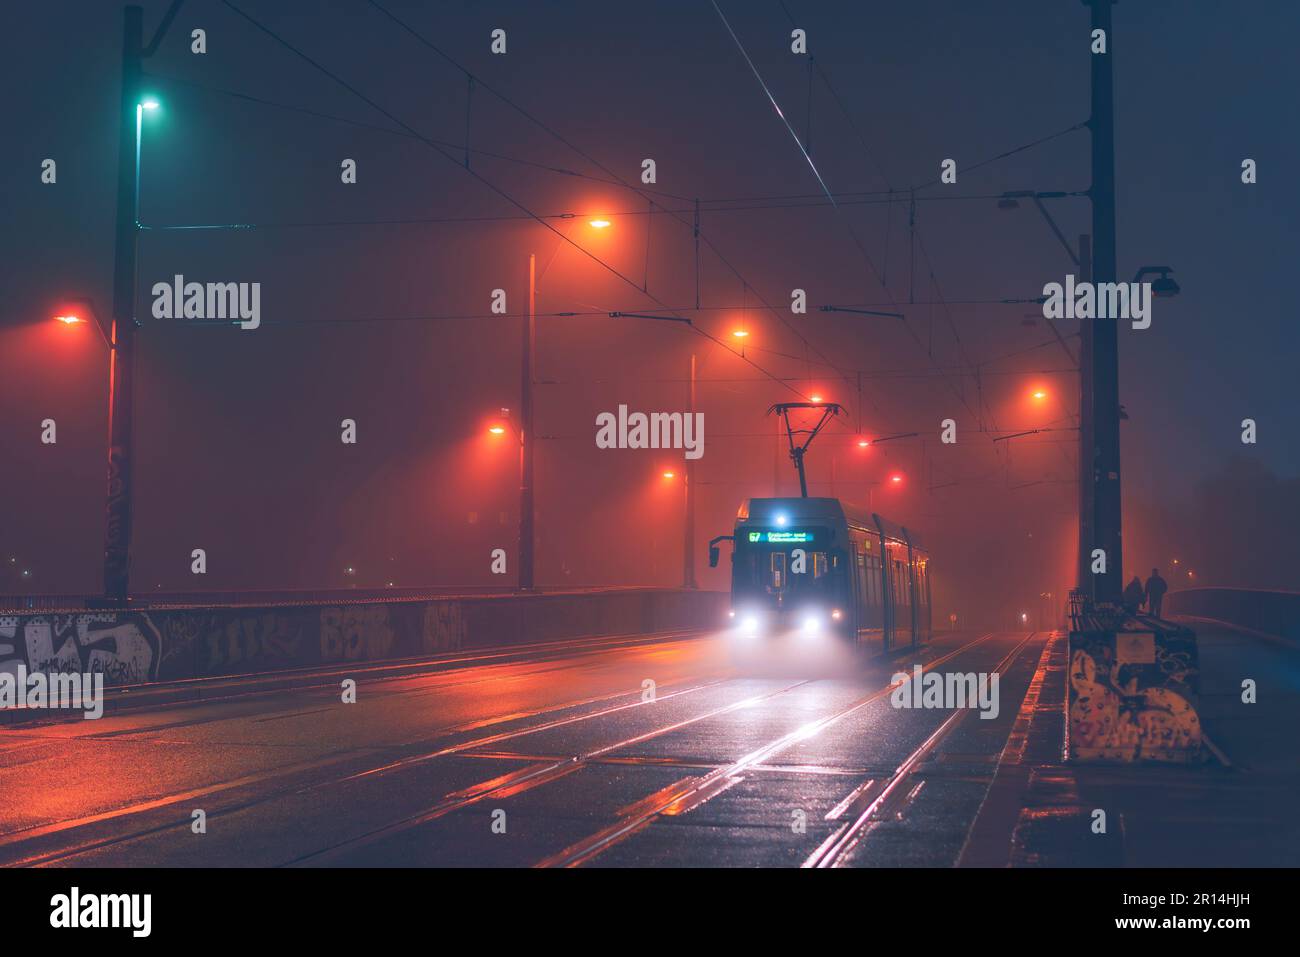 Titel: Tram di berlino in nebbia, tram in nebbia bagnata, Un tram di Berlino guida su un ponte nebbia, blurry Foto Stock